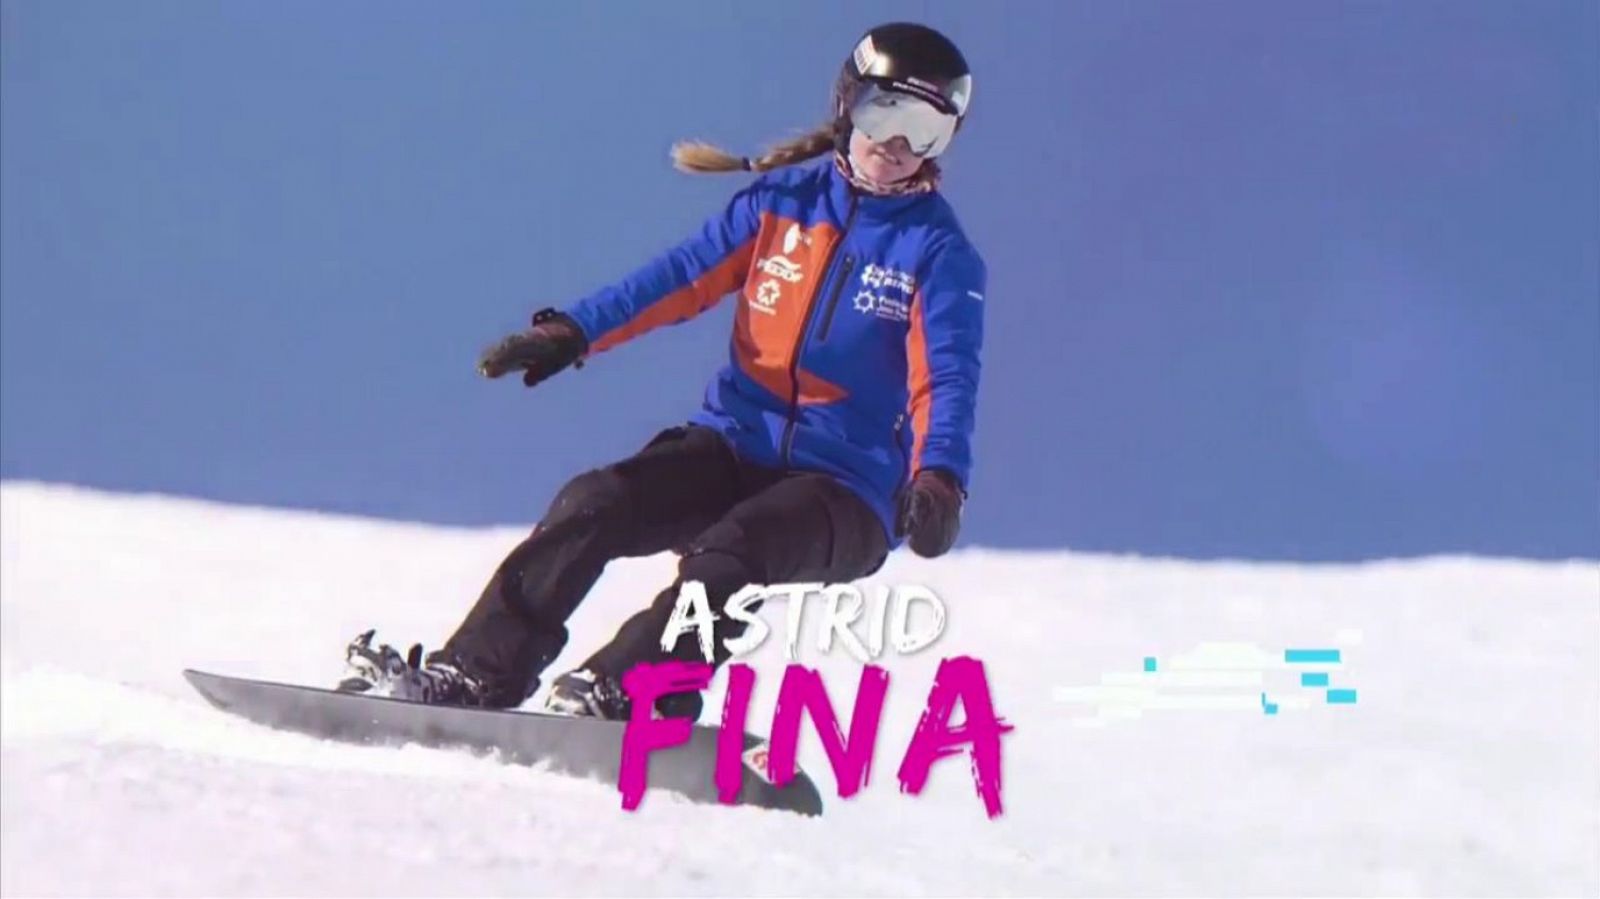 Mujer y deporte - FEDDF - Deporte de invierno: Astrid Fina